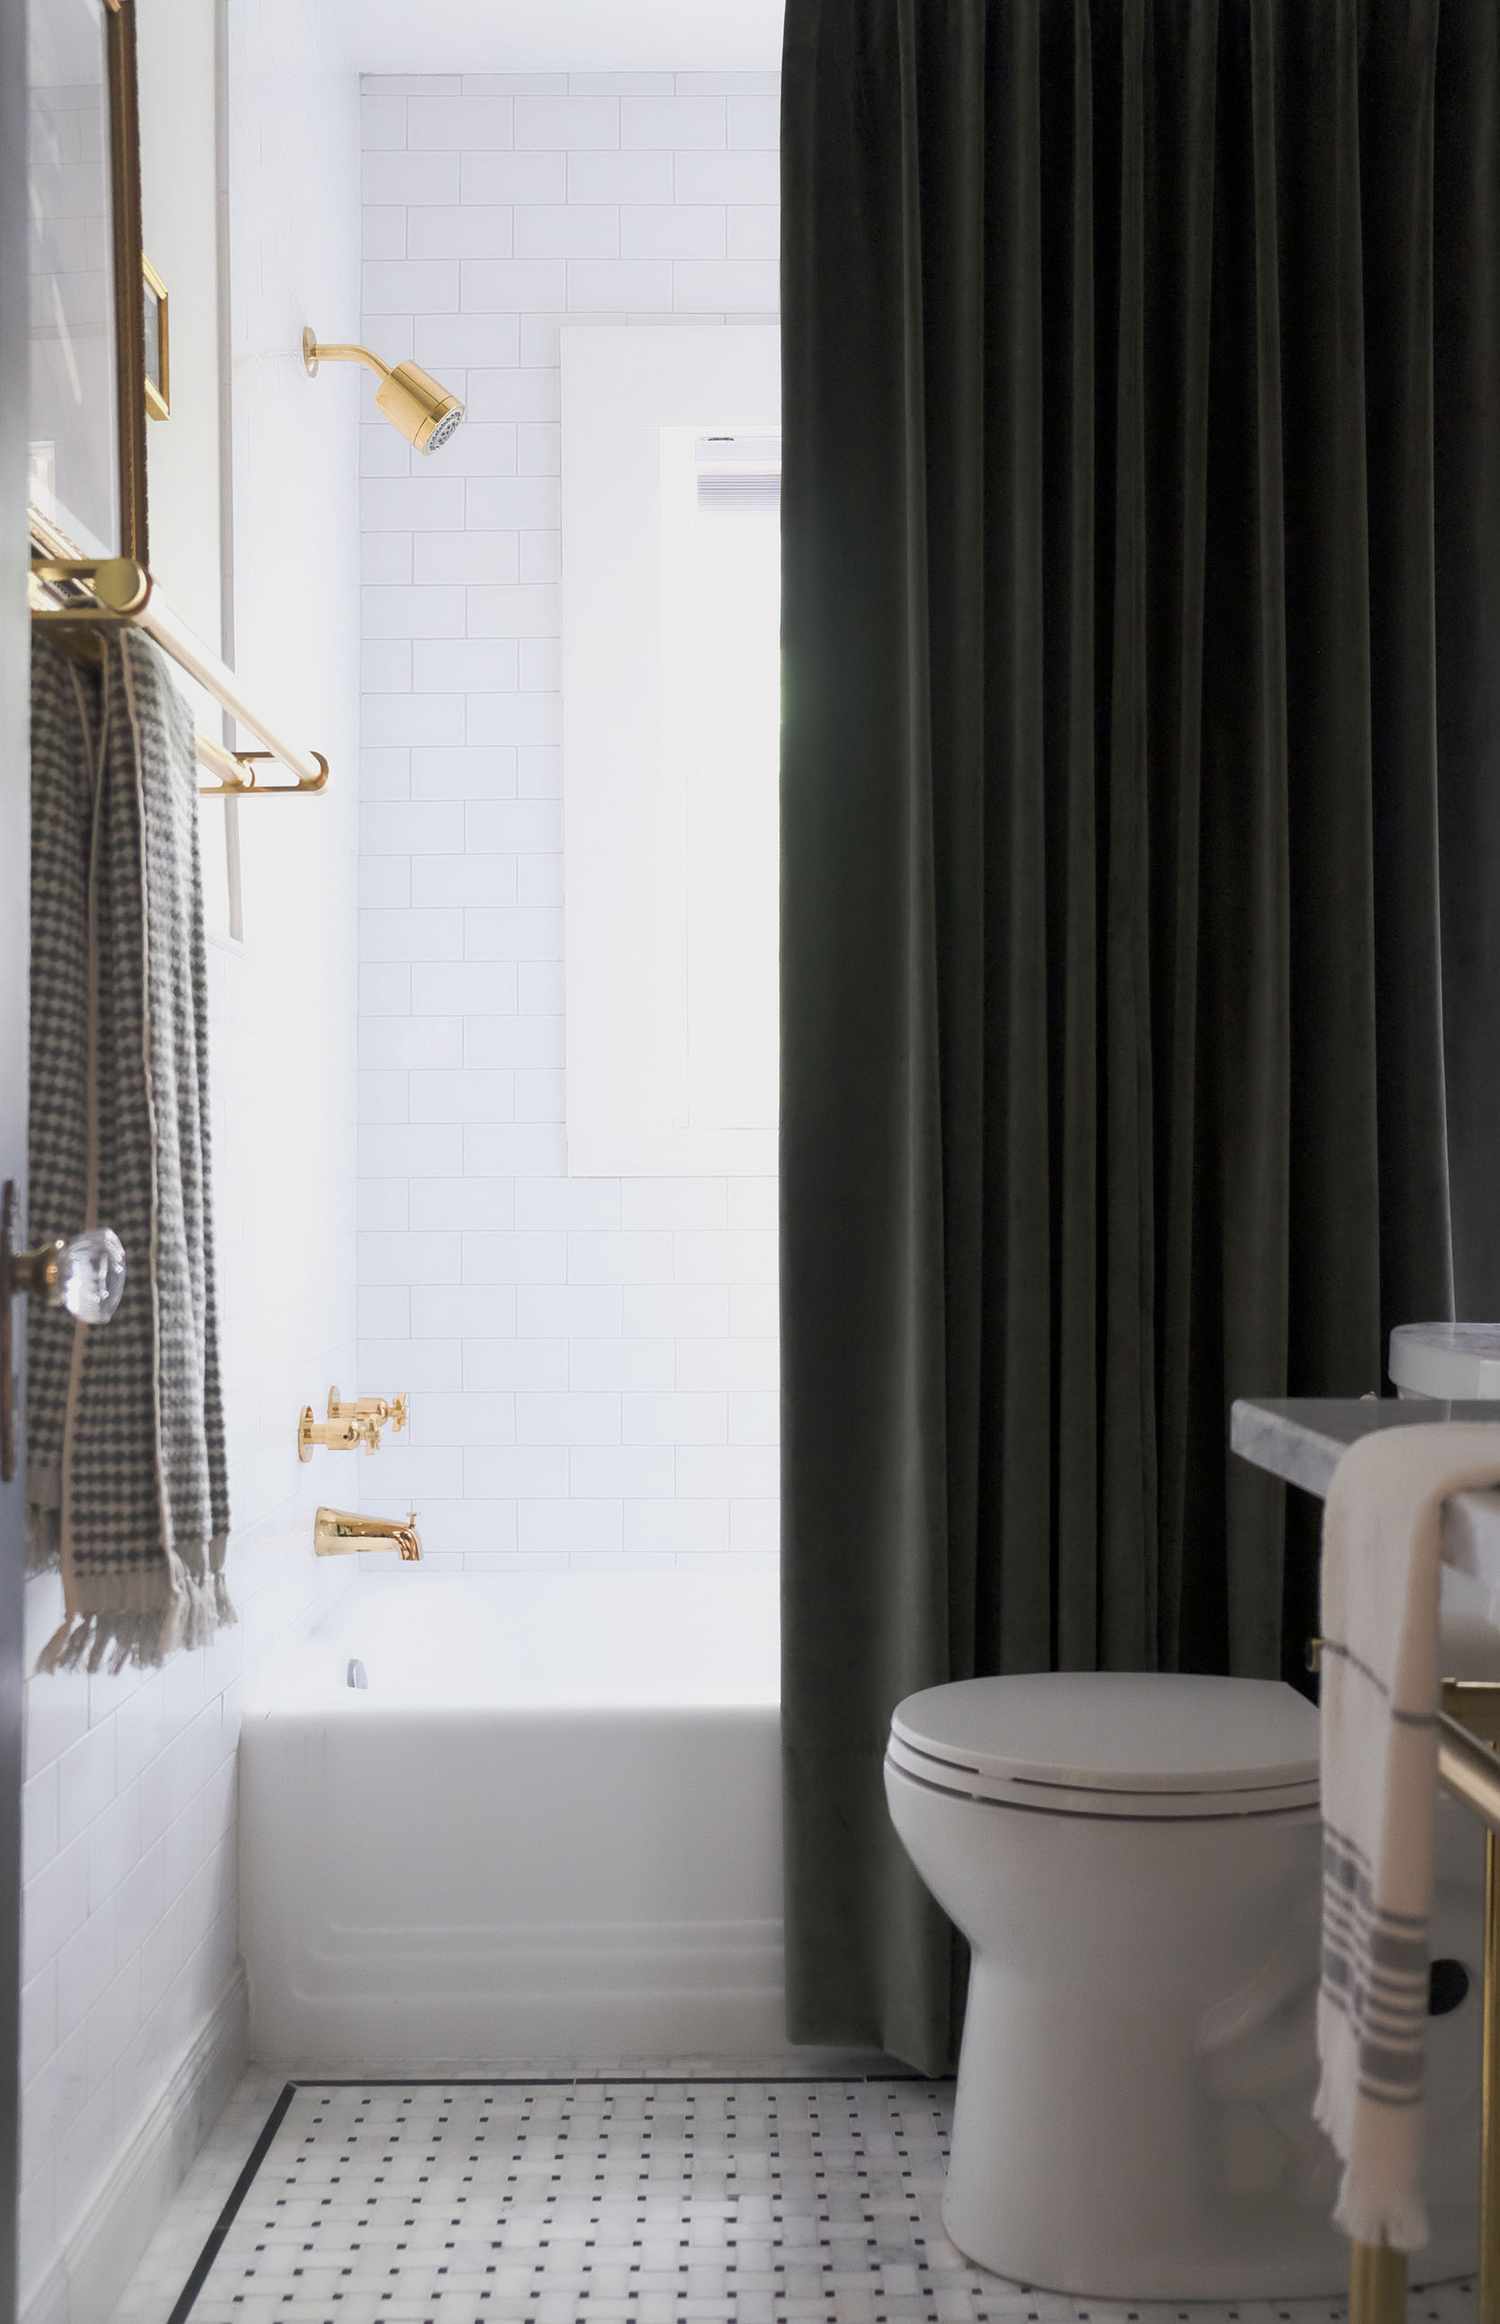 Una cortina de ducha alta y oscura destaca en un baño mayoritariamente blanco